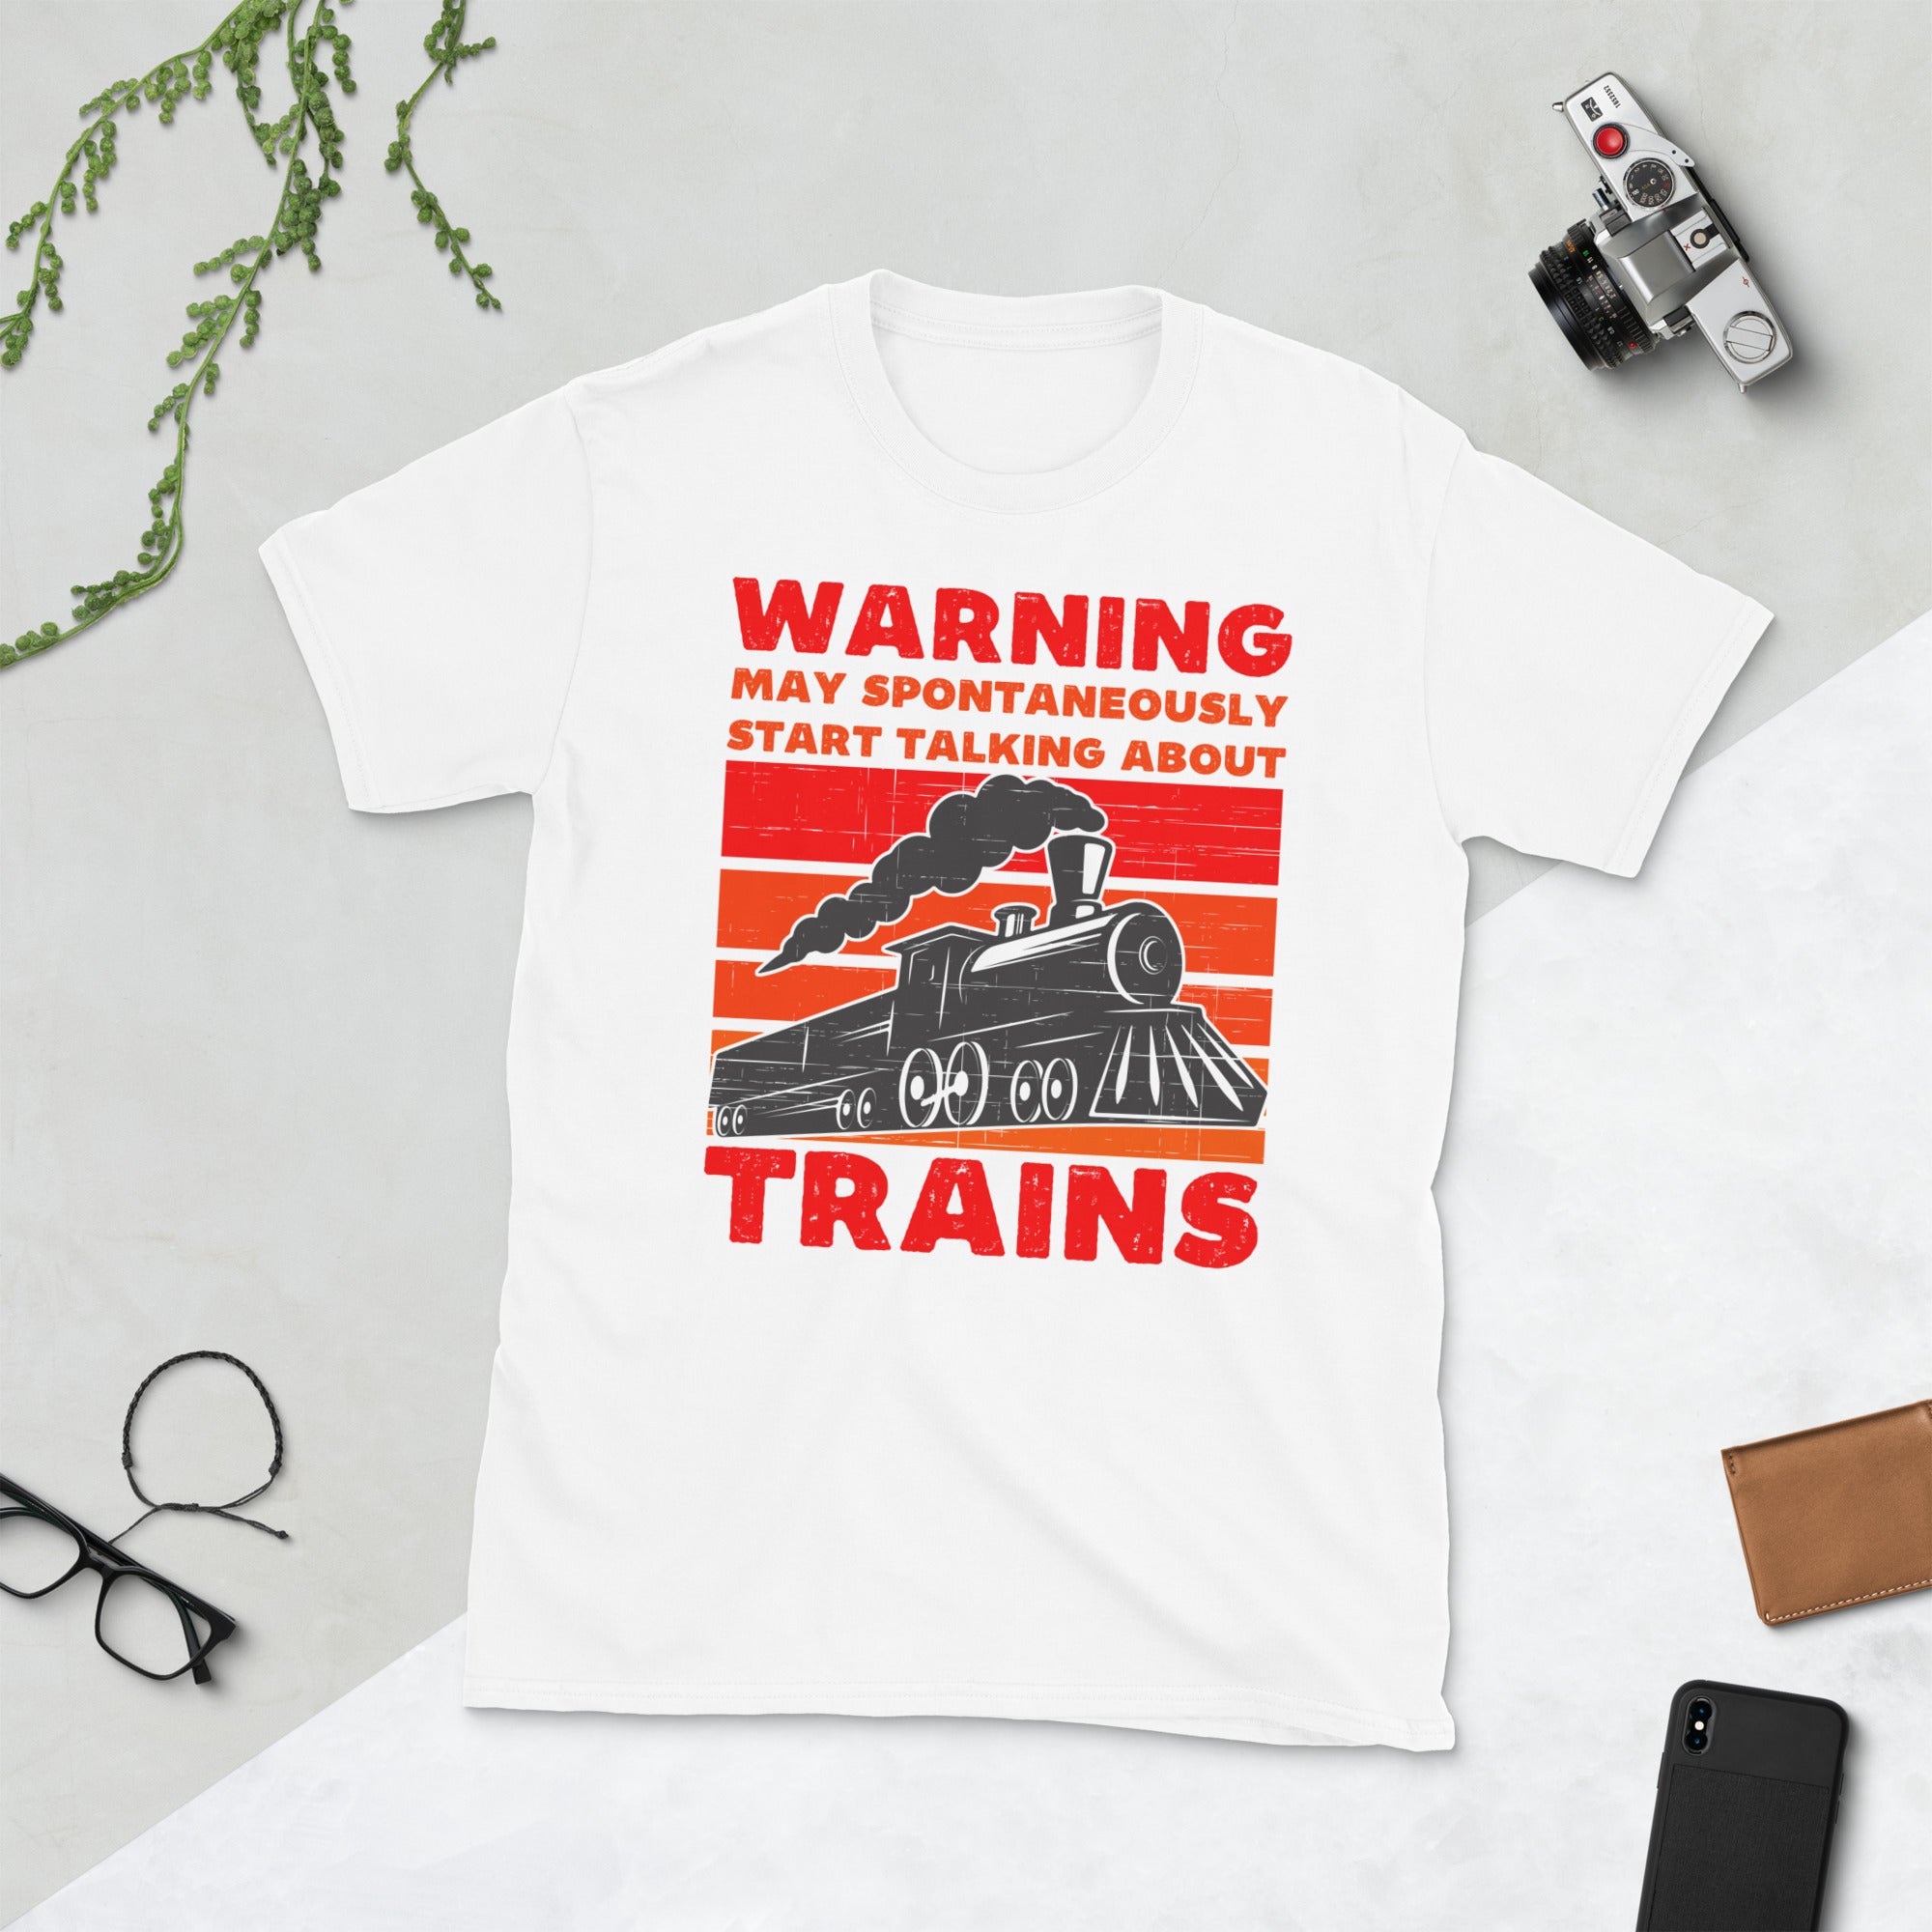 Advertencia puede comenzar espontáneamente a hablar de trenes, camisa de ingeniero de trenes, regalos de locomotora modelo de tren, camiseta de ferrocarril, camiseta de tren vintage